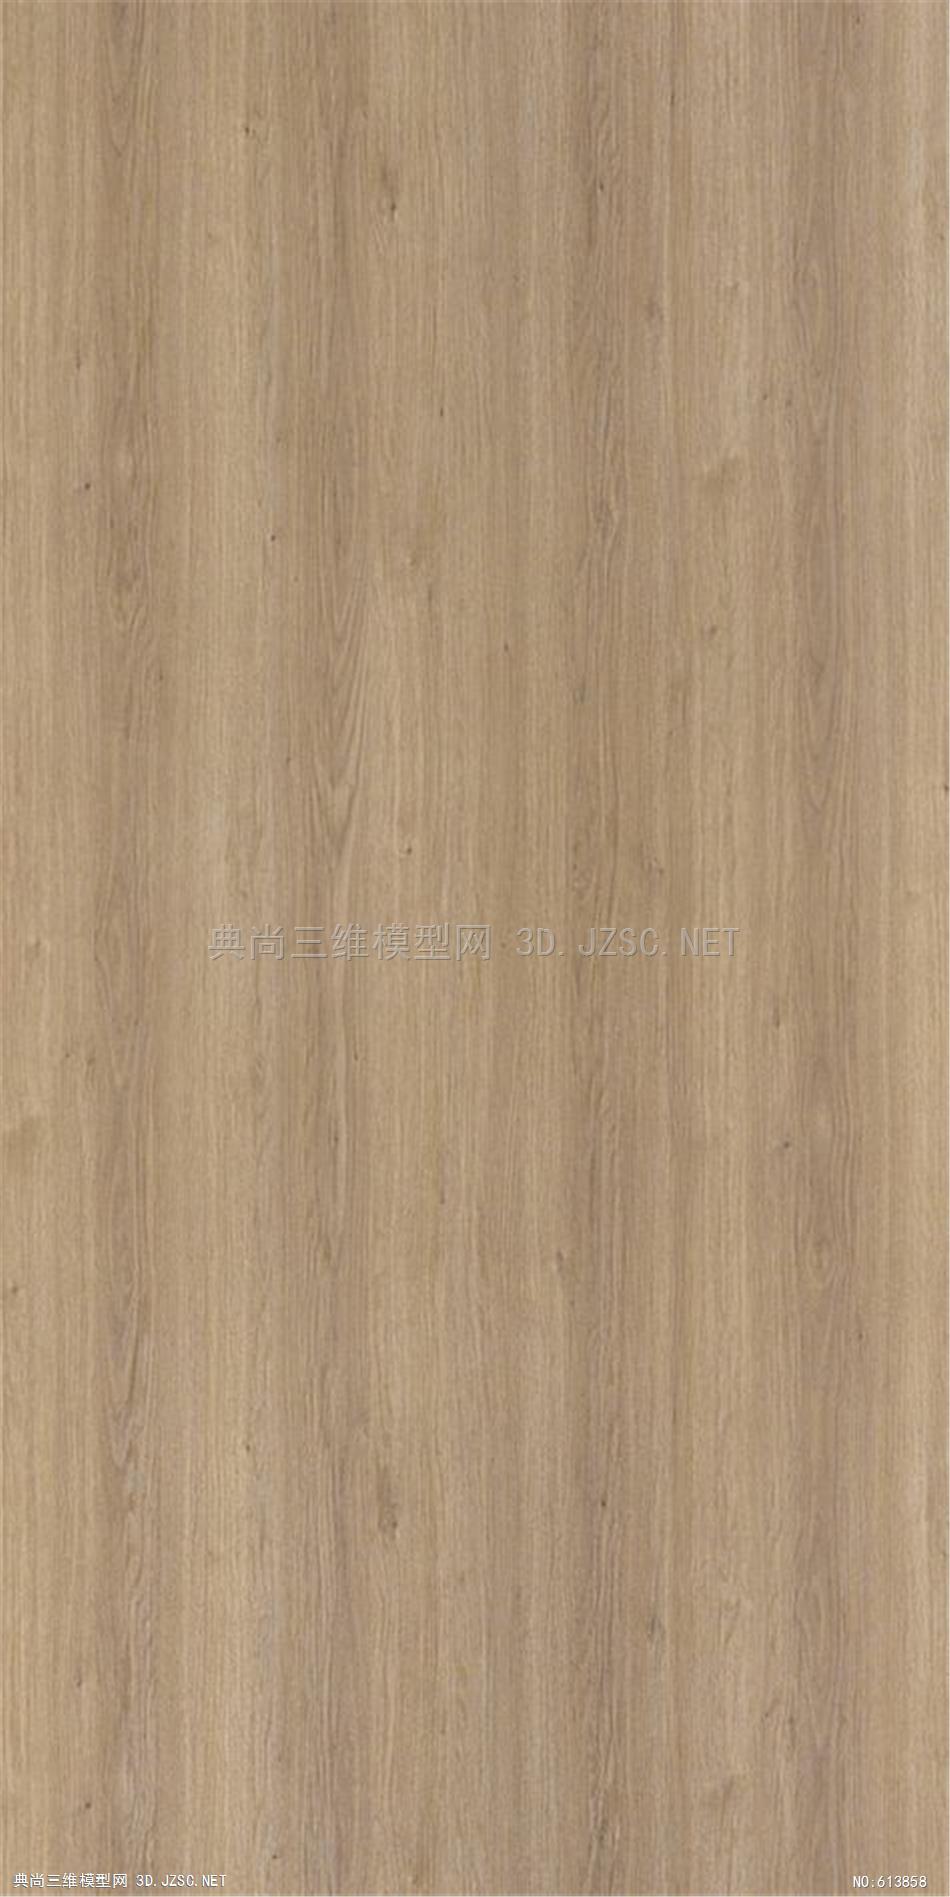 木地板 木纹 木材  高清材质贴图 (20)